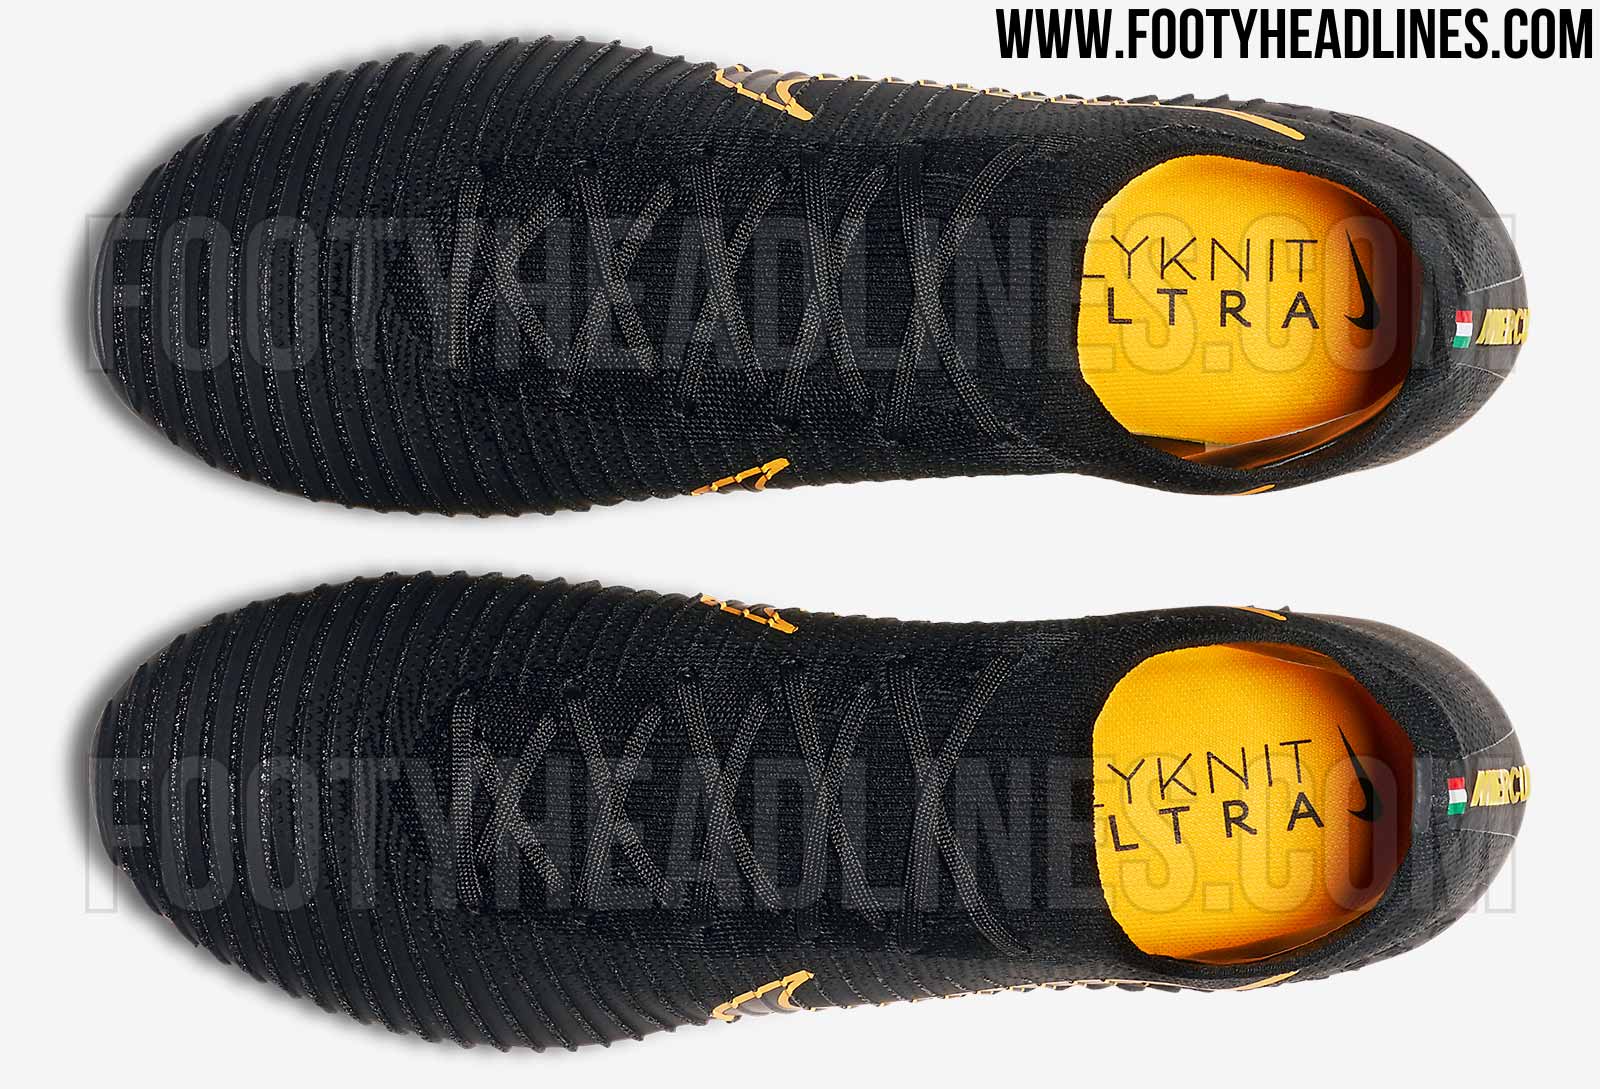 black-laser-orange-nike-flyknit-ultra-football-boots-5.jpg